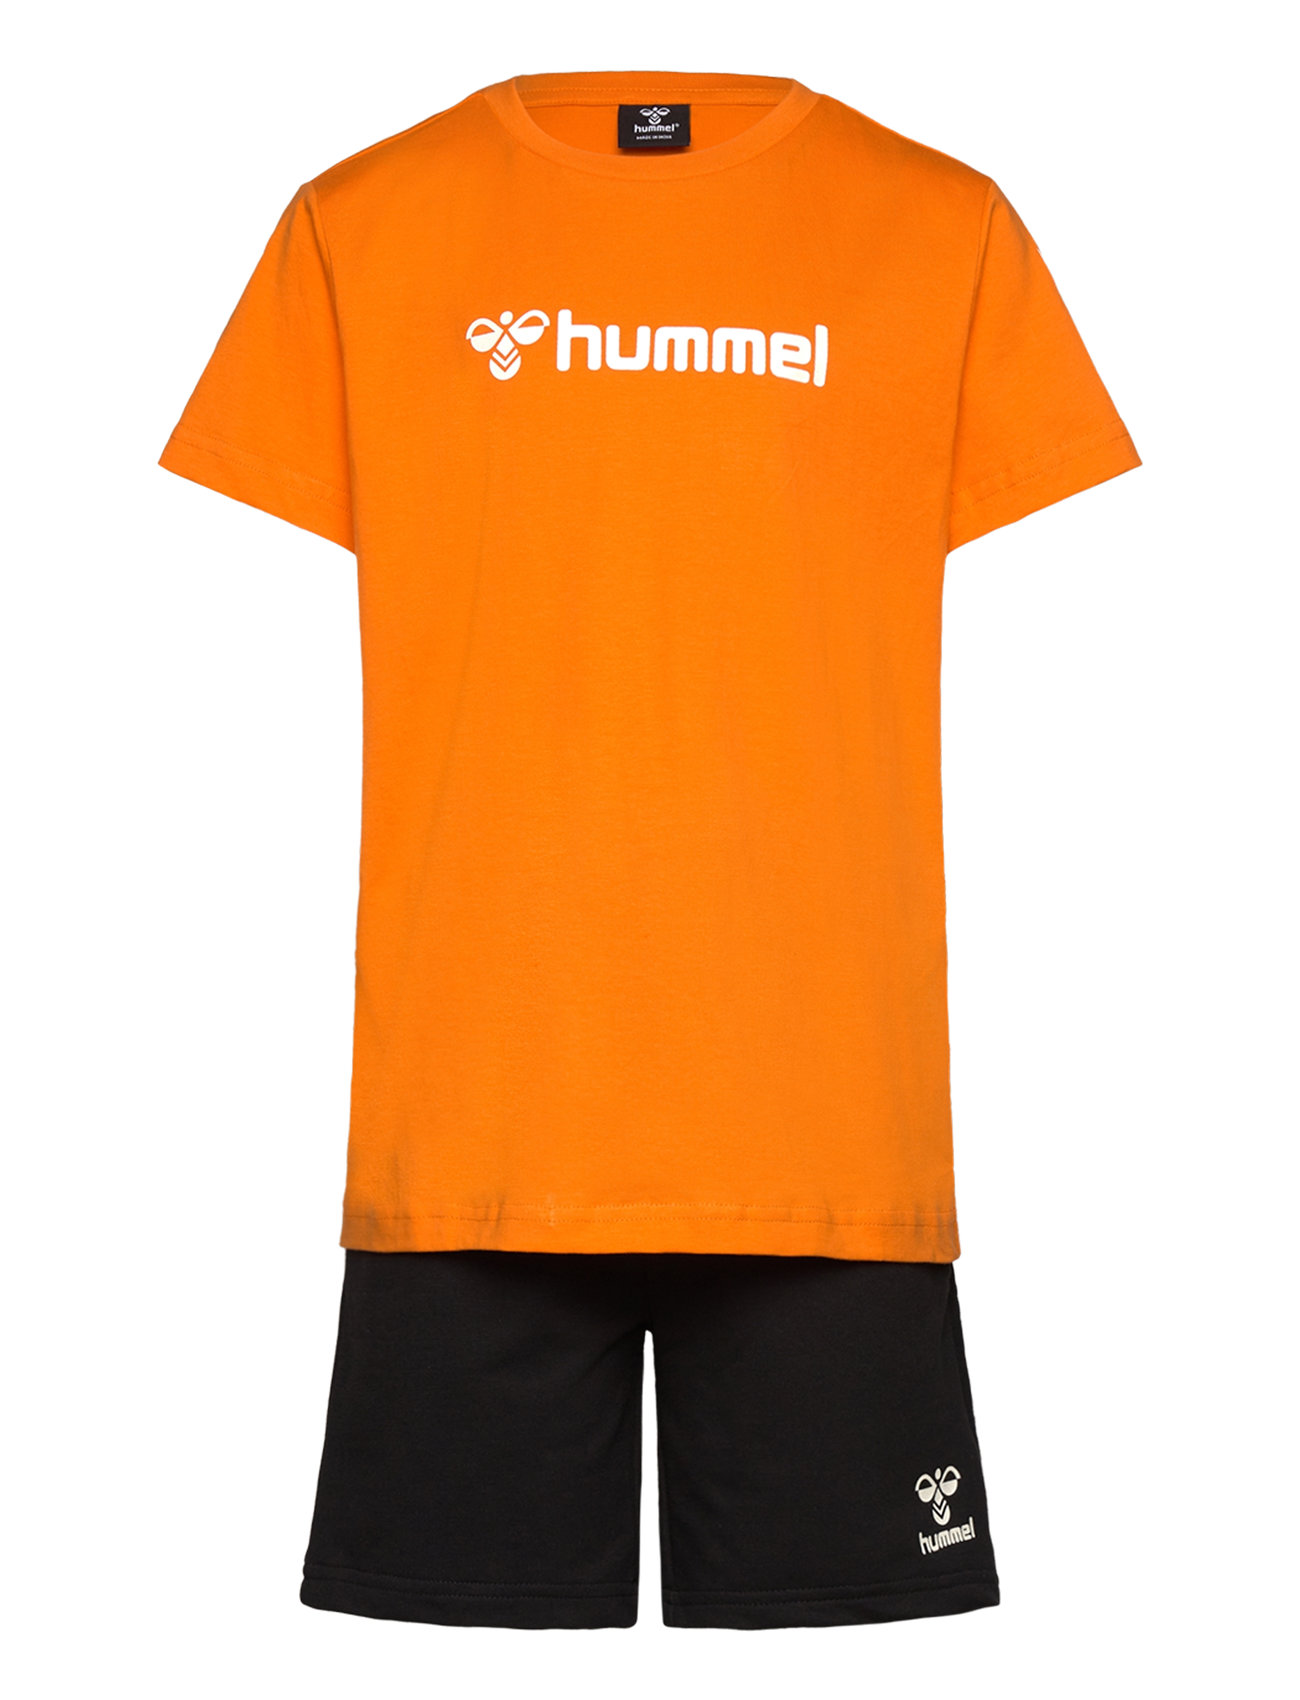 Hmlnovet Shorts Set Sport Sets With Short-sleeved T-shirt Orange Hummel